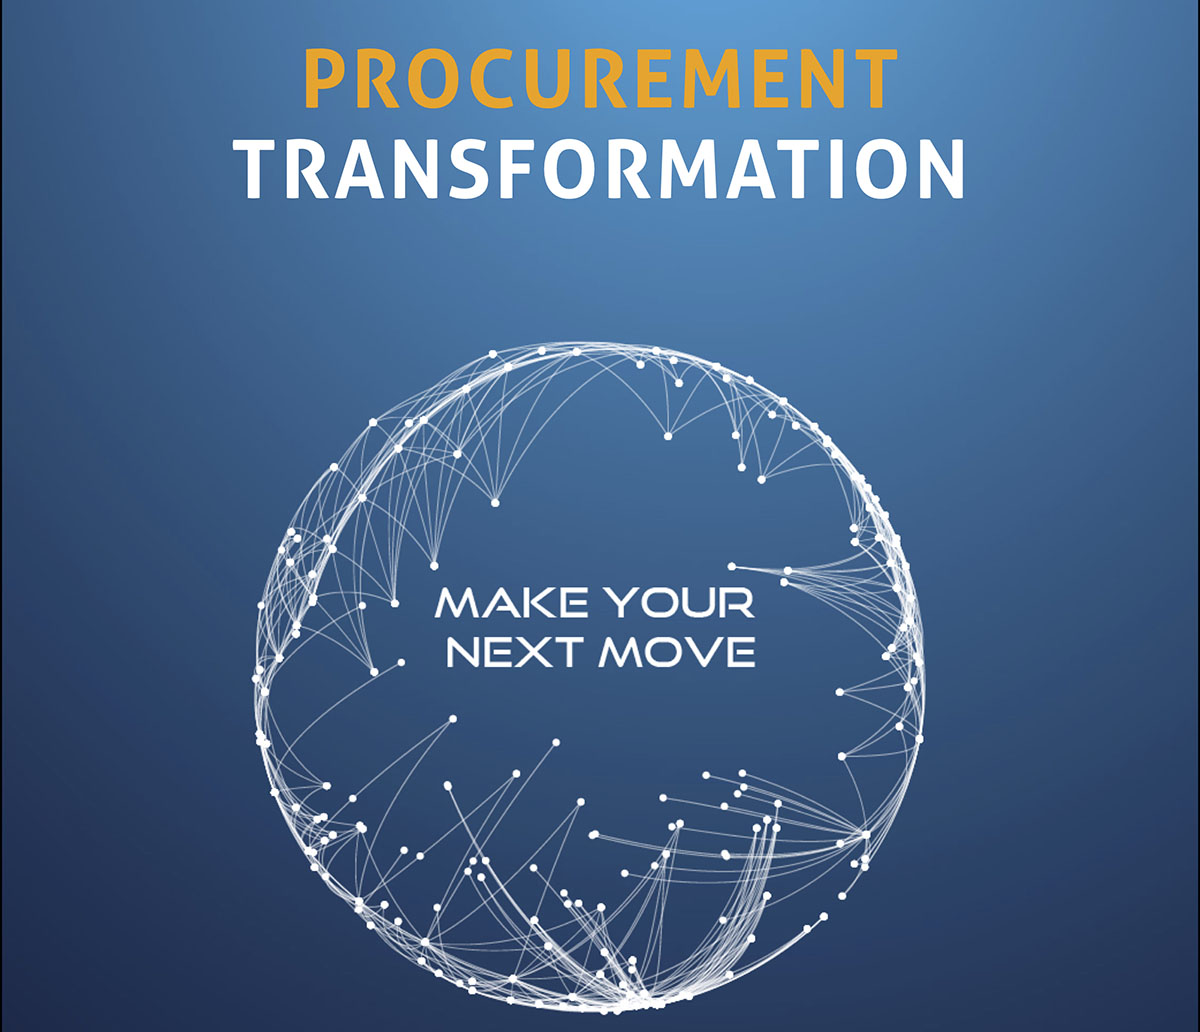 Procurement Transformation: Make Your Next Move